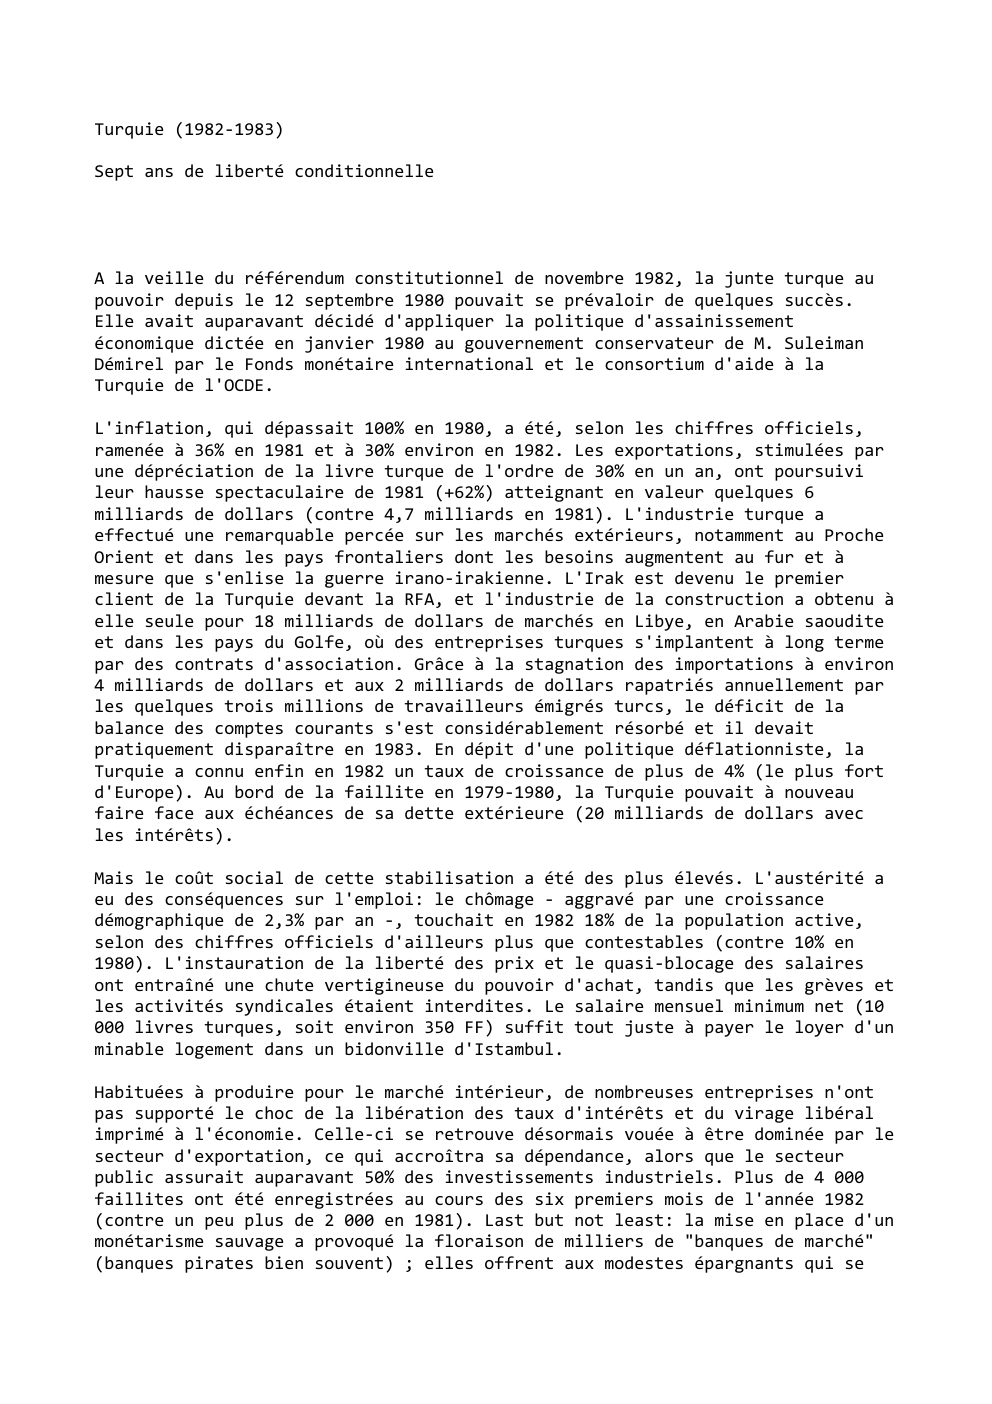 Prévisualisation du document Turquie (1982-1983)
Sept ans de liberté conditionnelle

A la veille du référendum constitutionnel de novembre 1982, la junte turque au...